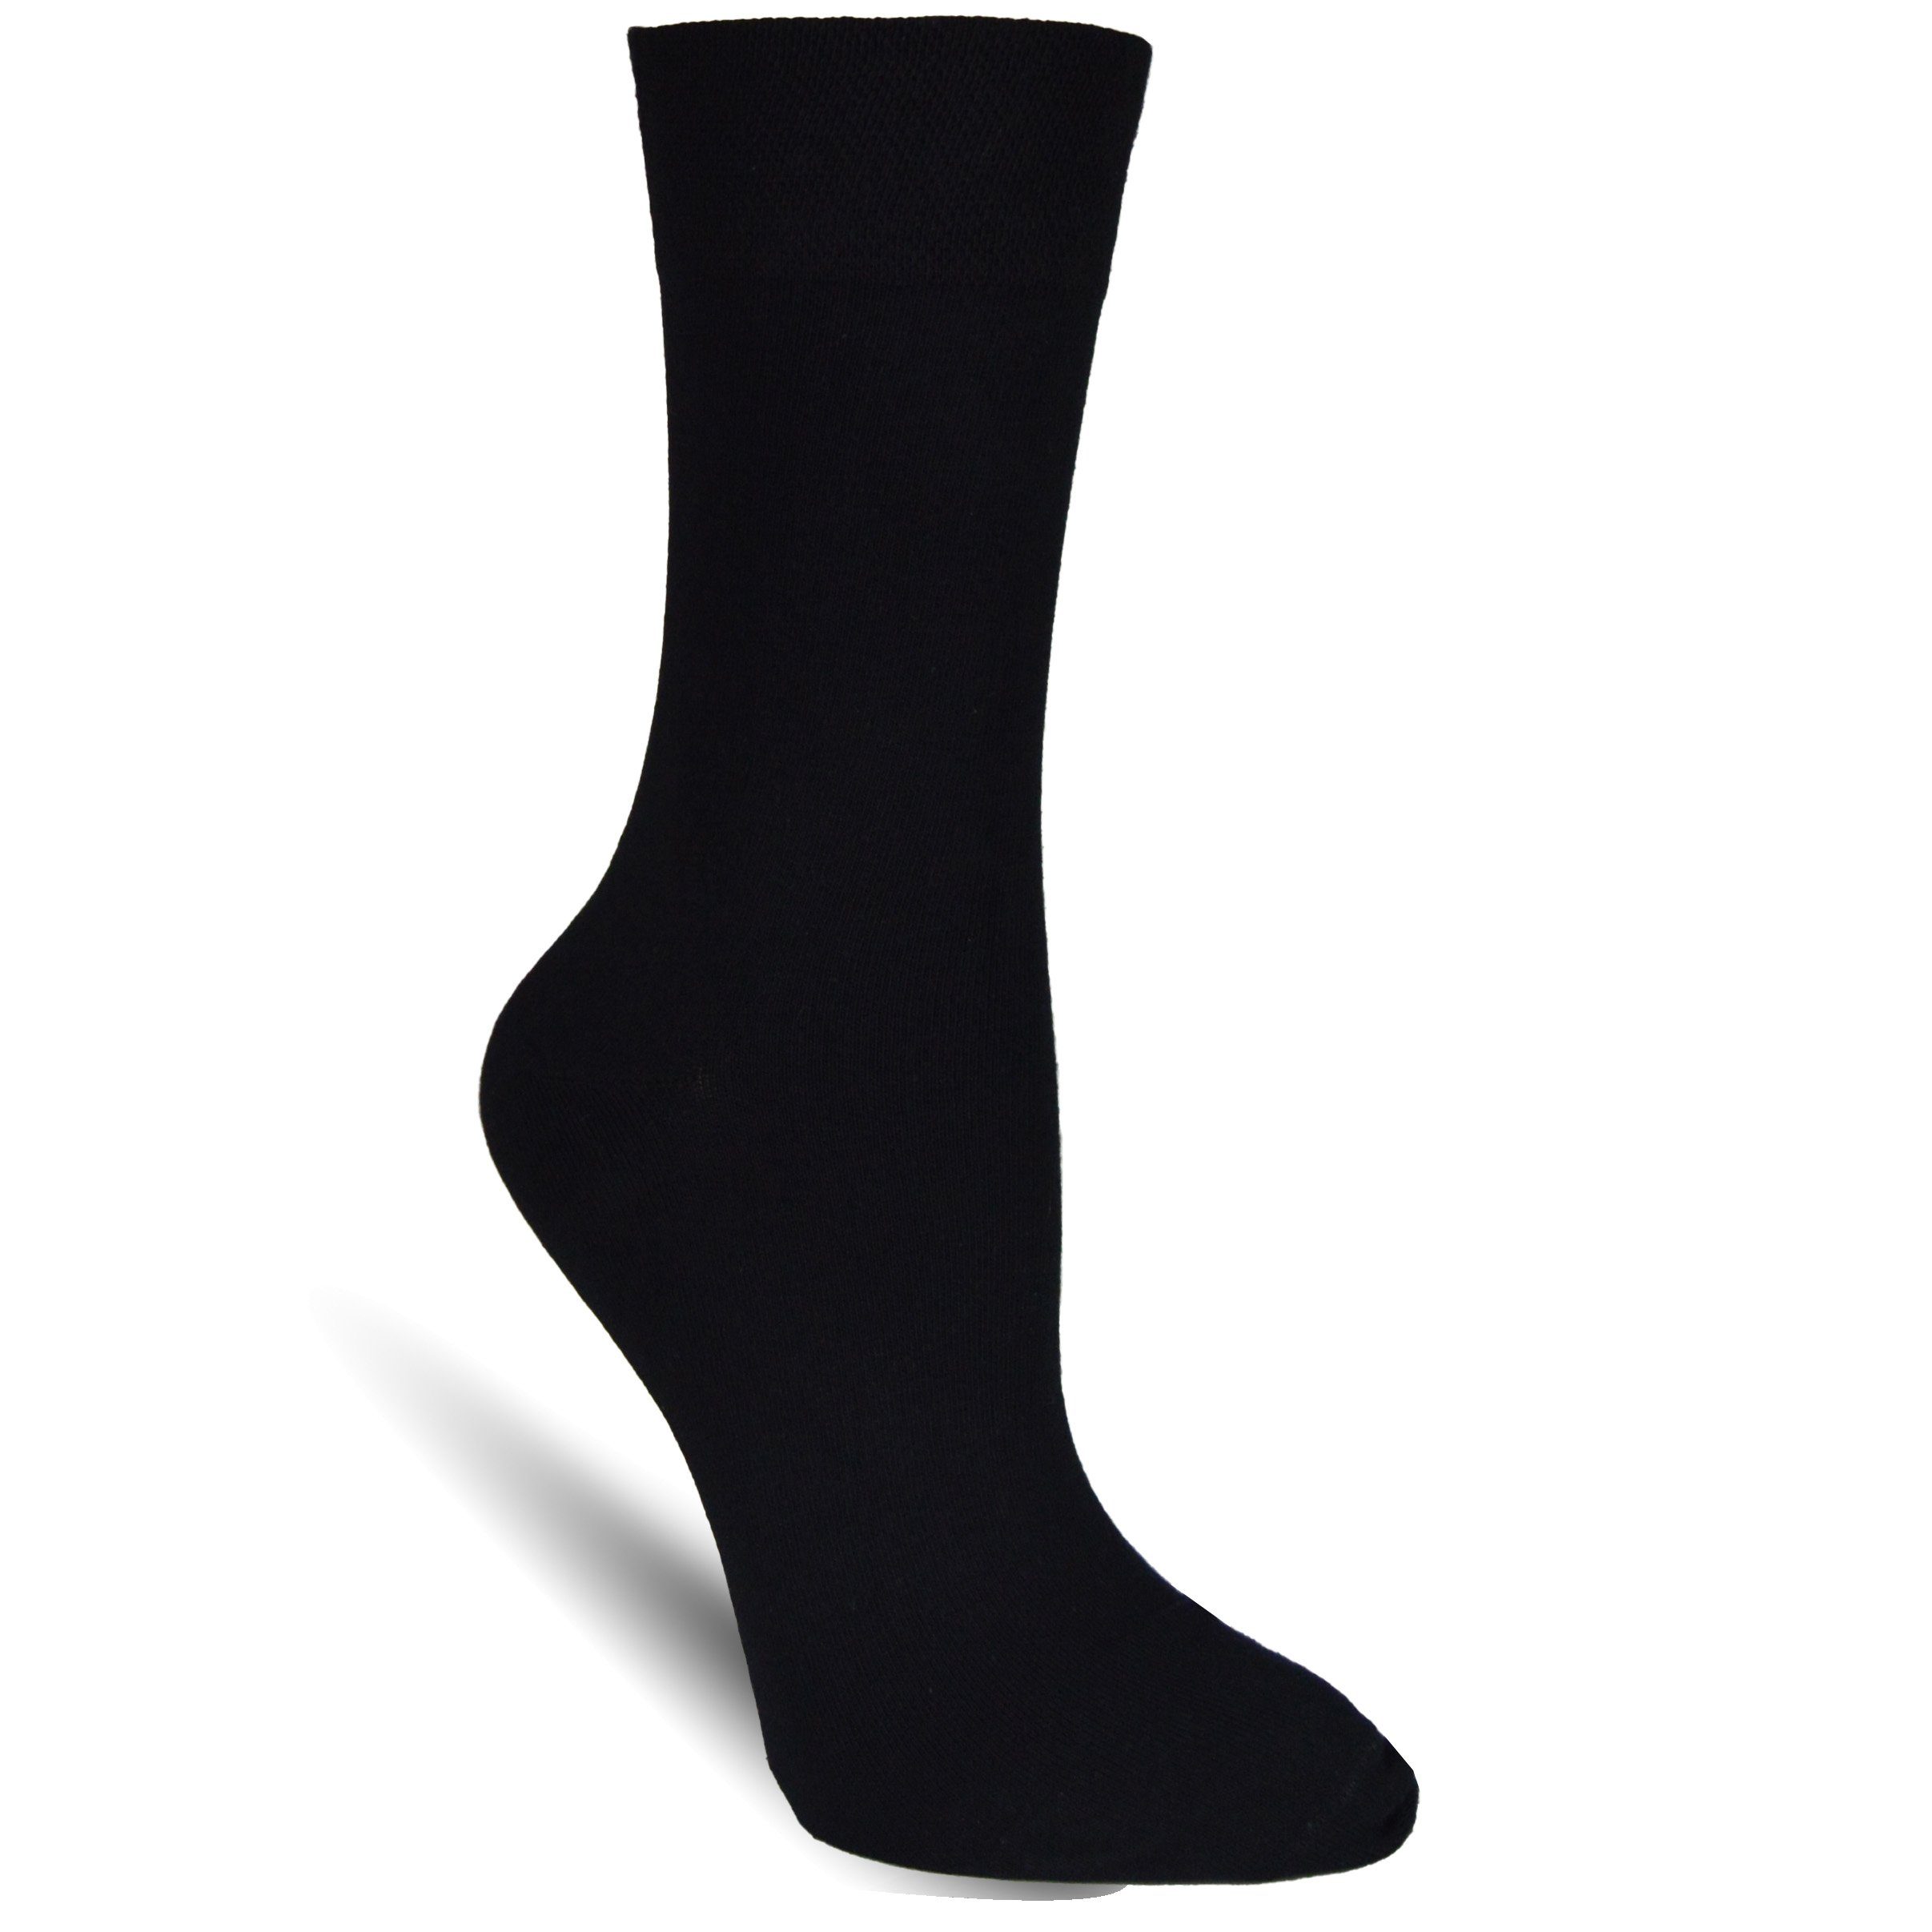 ohne Schwarz (12-Paar) Diabetikersocken Socked elastische ohne Naht Damensocken Strümpfe Einschneiden, Komfortbund, kein Gummi